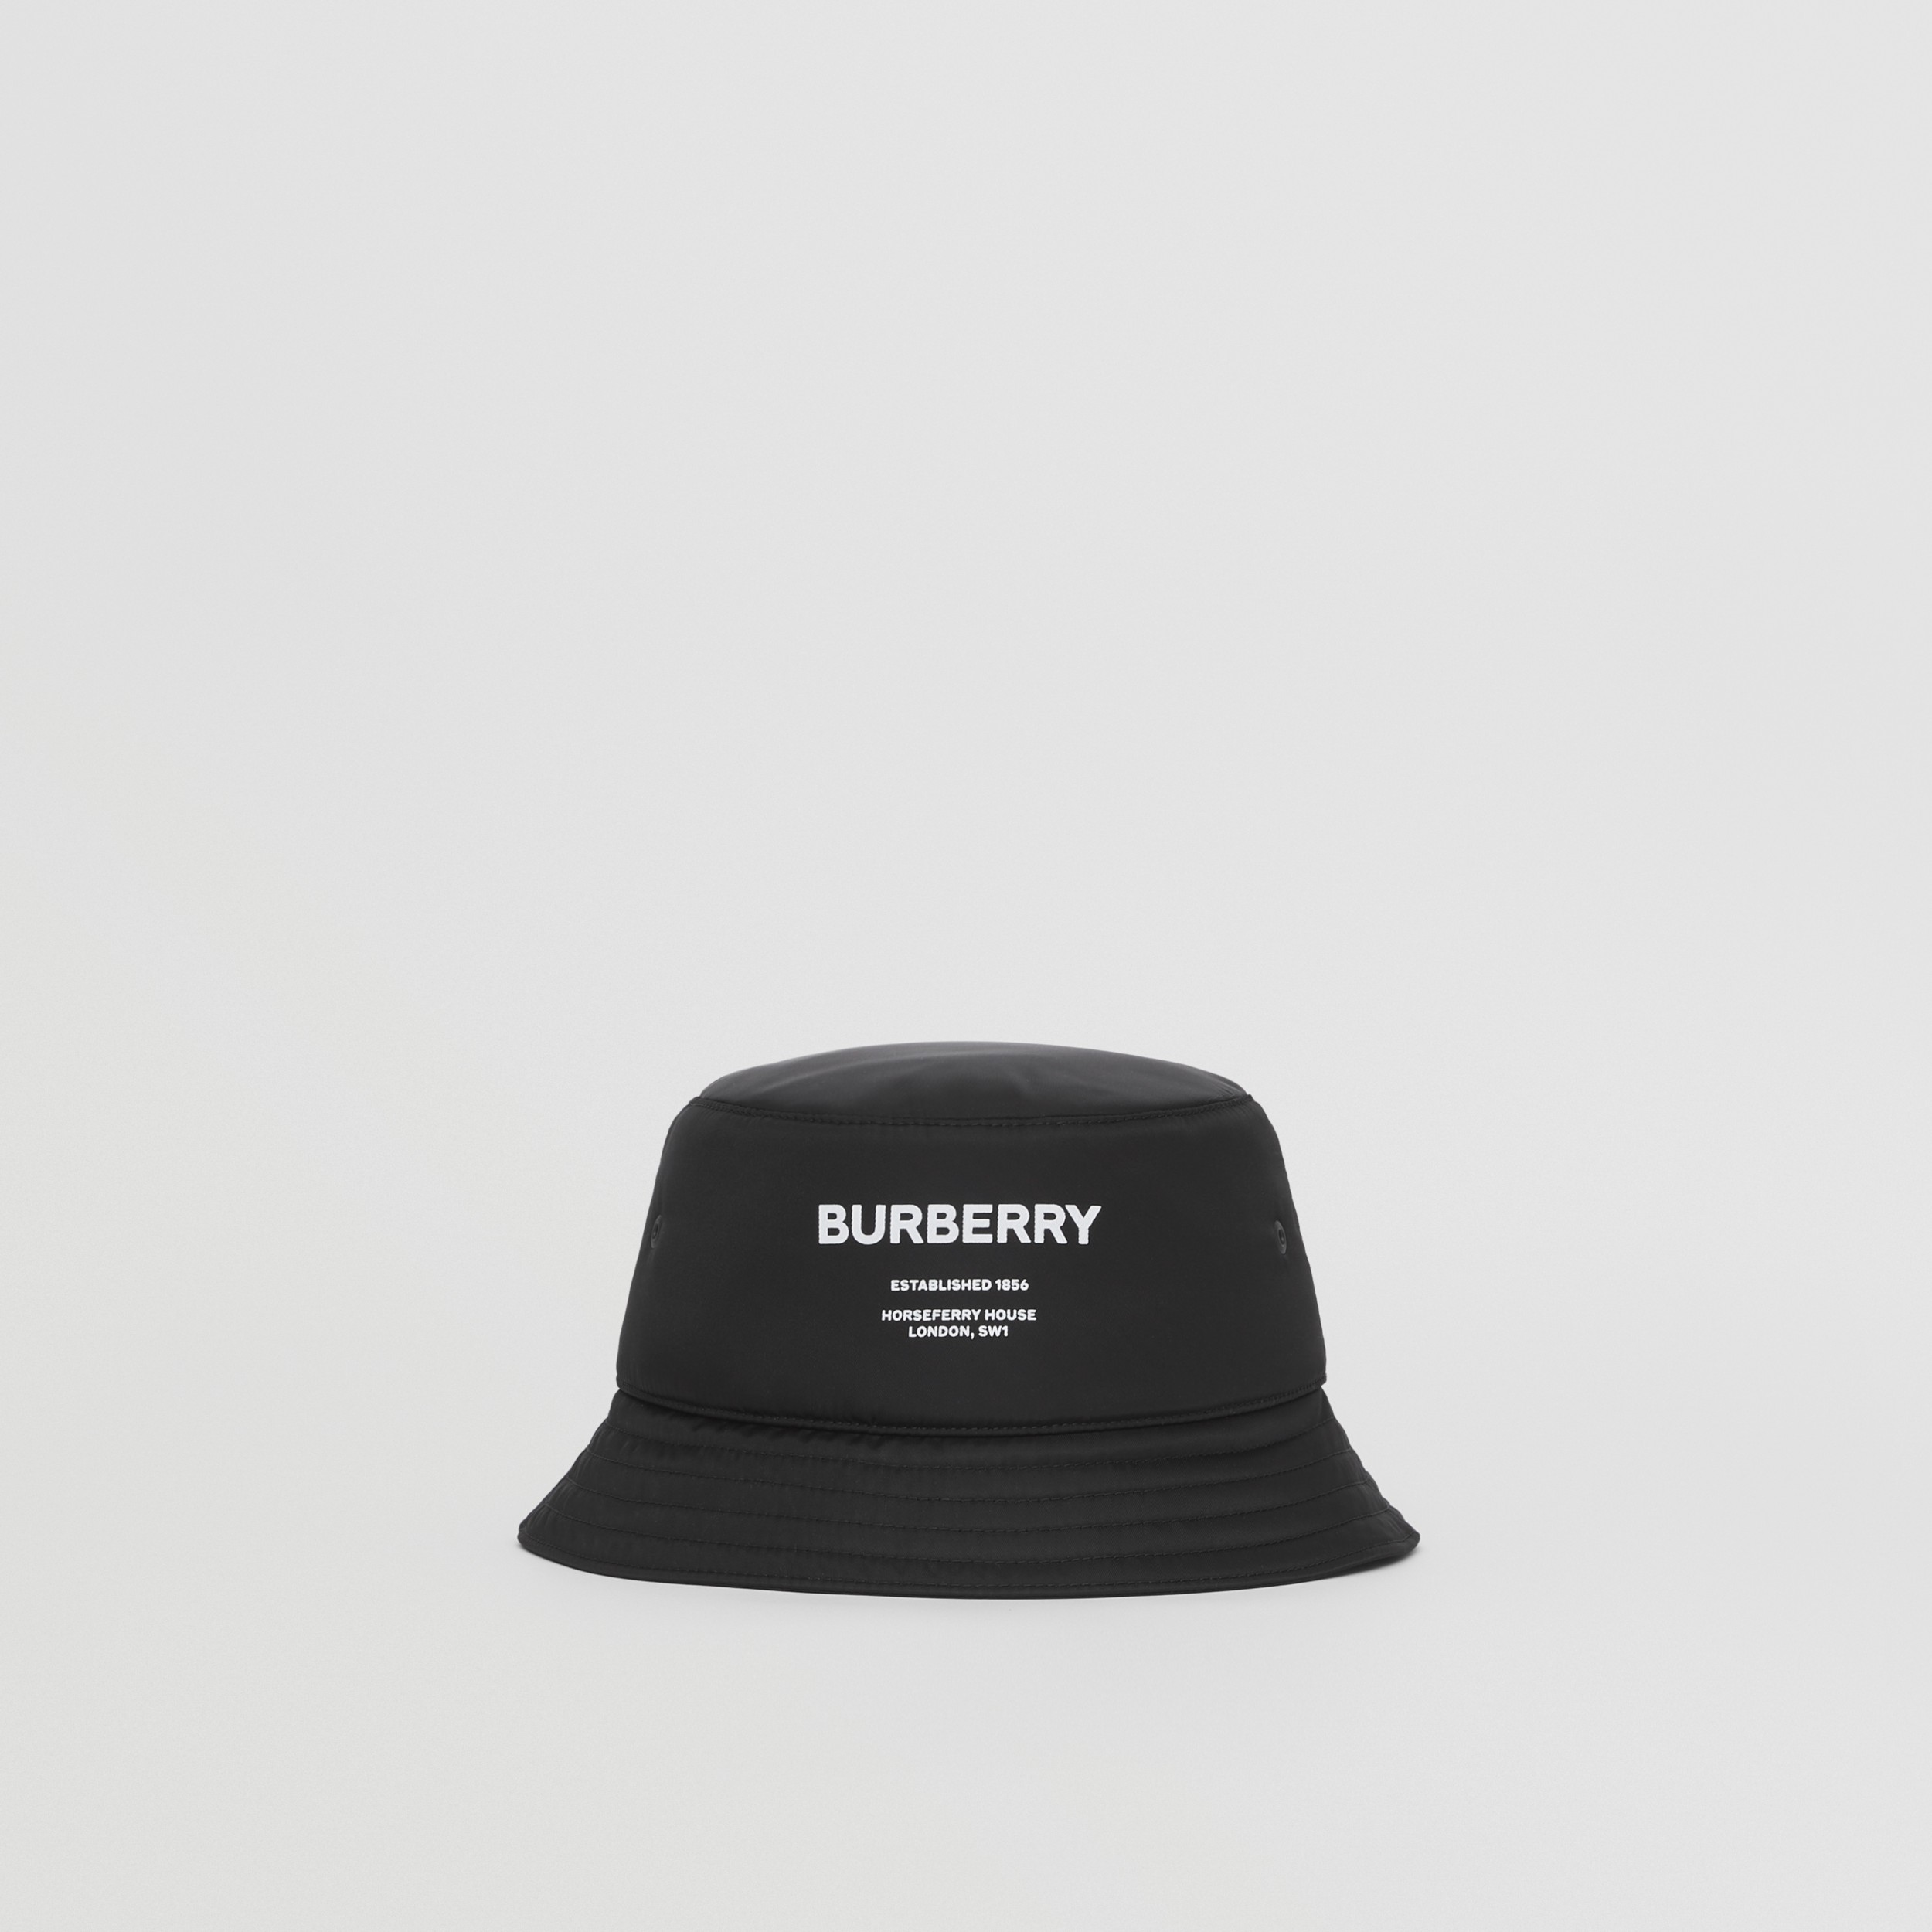 Actualizar 78+ imagen burberry london england bucket hat